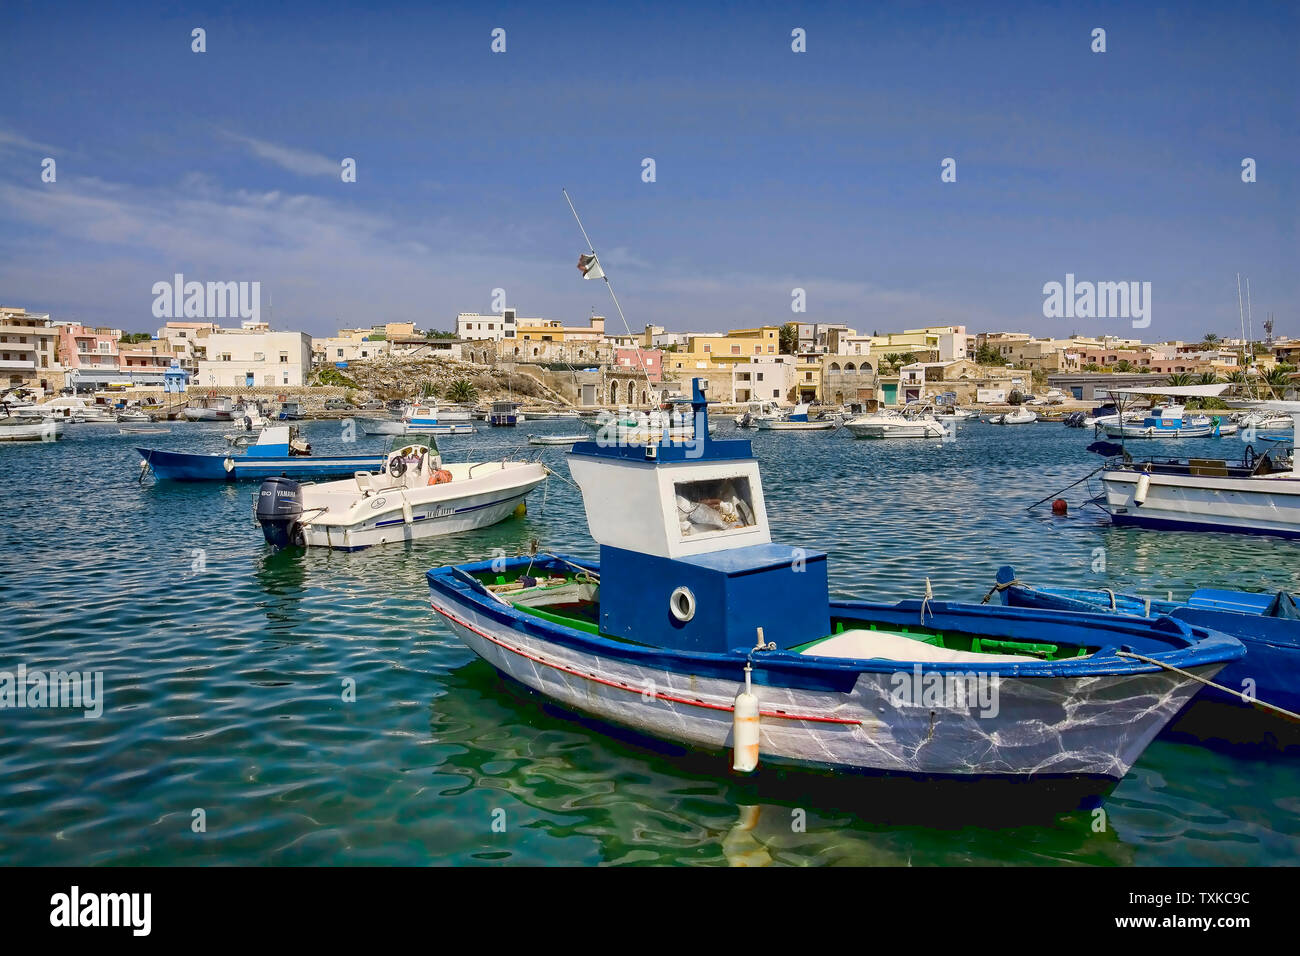 Bateaux de pêche au port de l'île de Lampedusa en Italie Sicile Banque D'Images